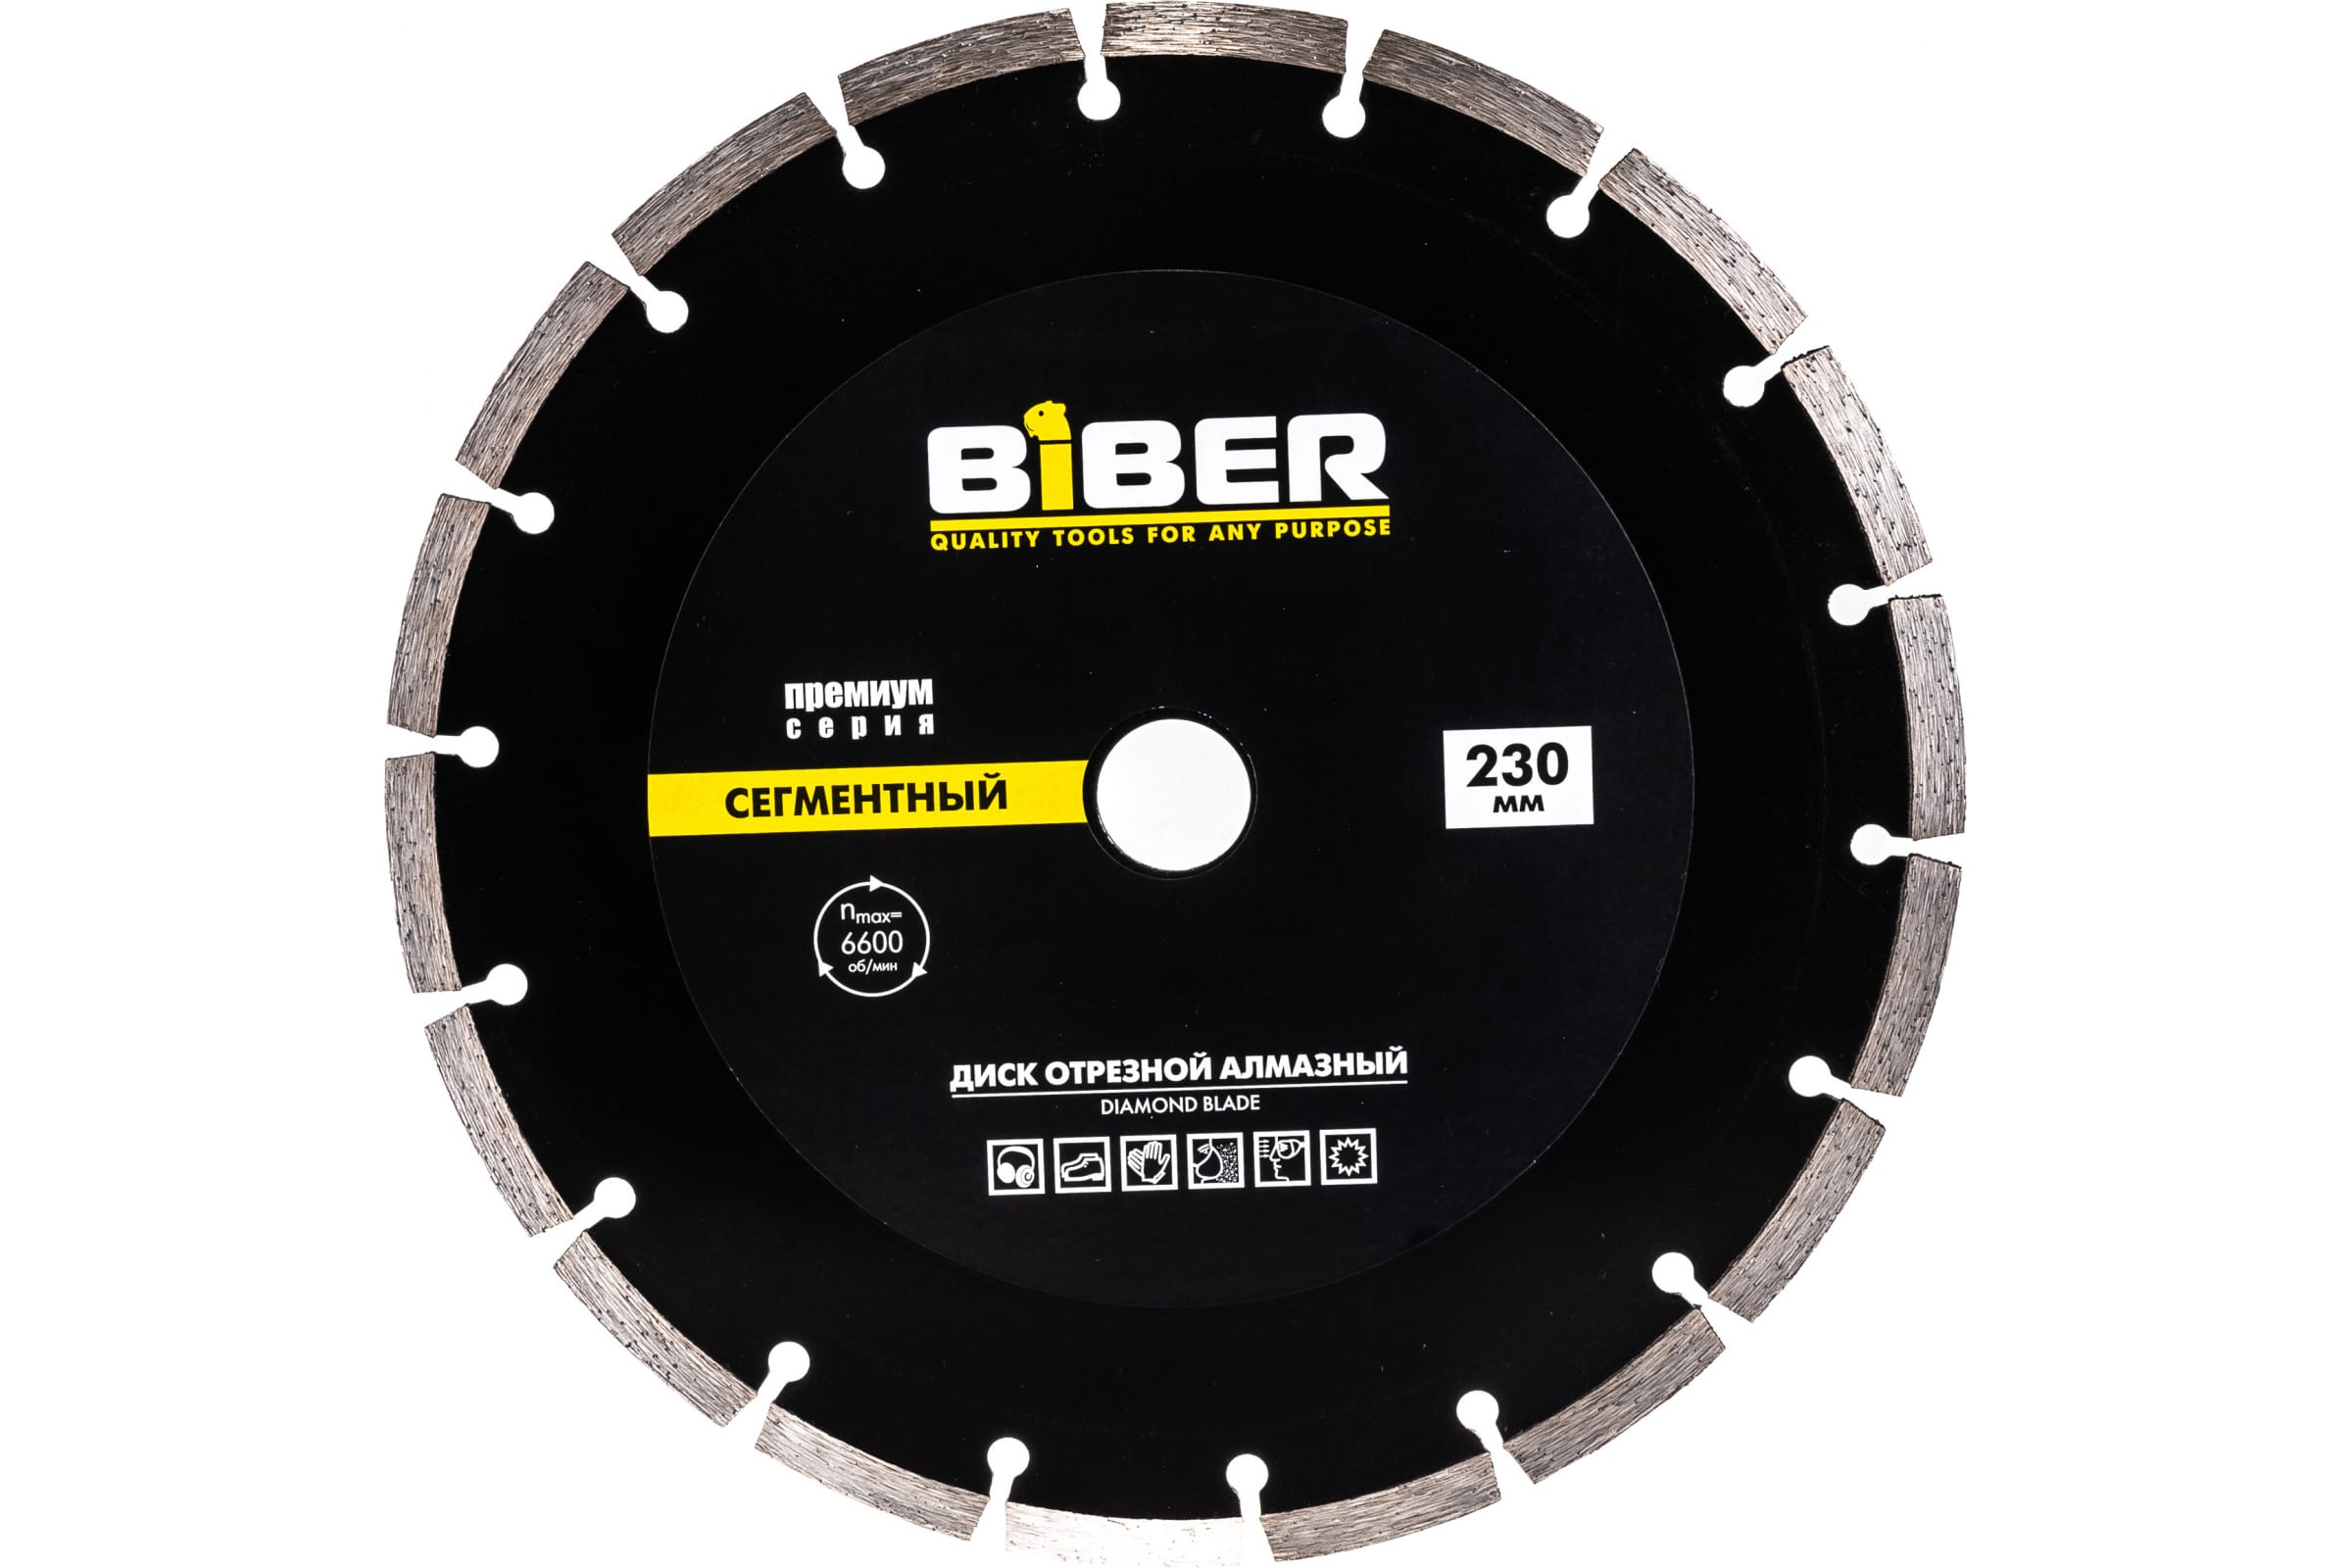 Biber Диск алмазный сегментный Премиум 230мм 70266 тов-039554 кувалда biber